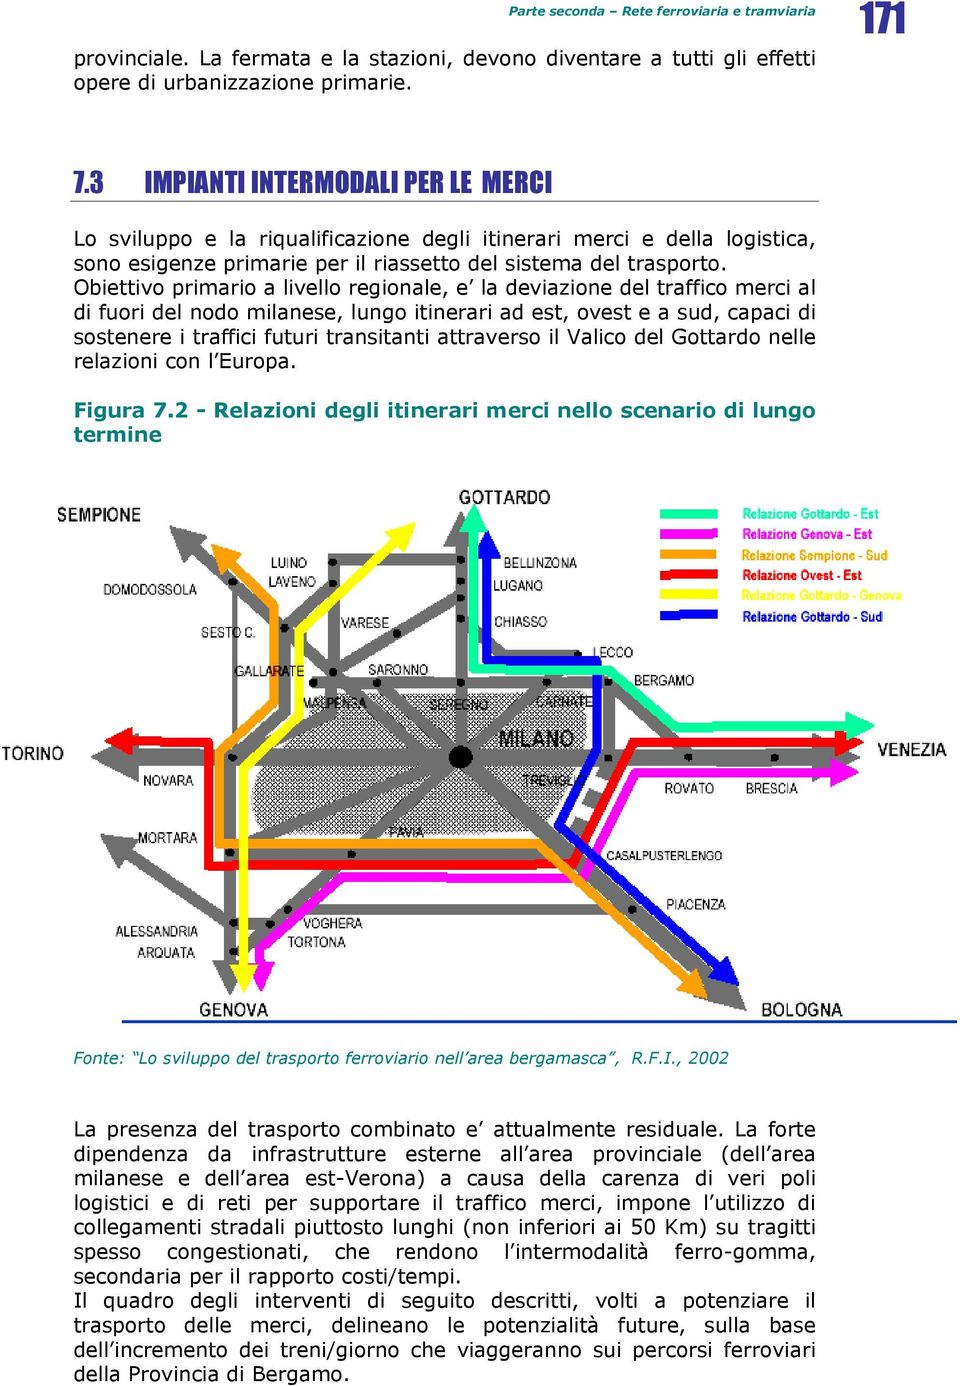 Obiettivo primario a livello regionale, e la deviazione del traffico merci al di fuori del nodo milanese, lungo itinerari ad est, ovest e a sud, capaci di sostenere i traffici futuri transitanti